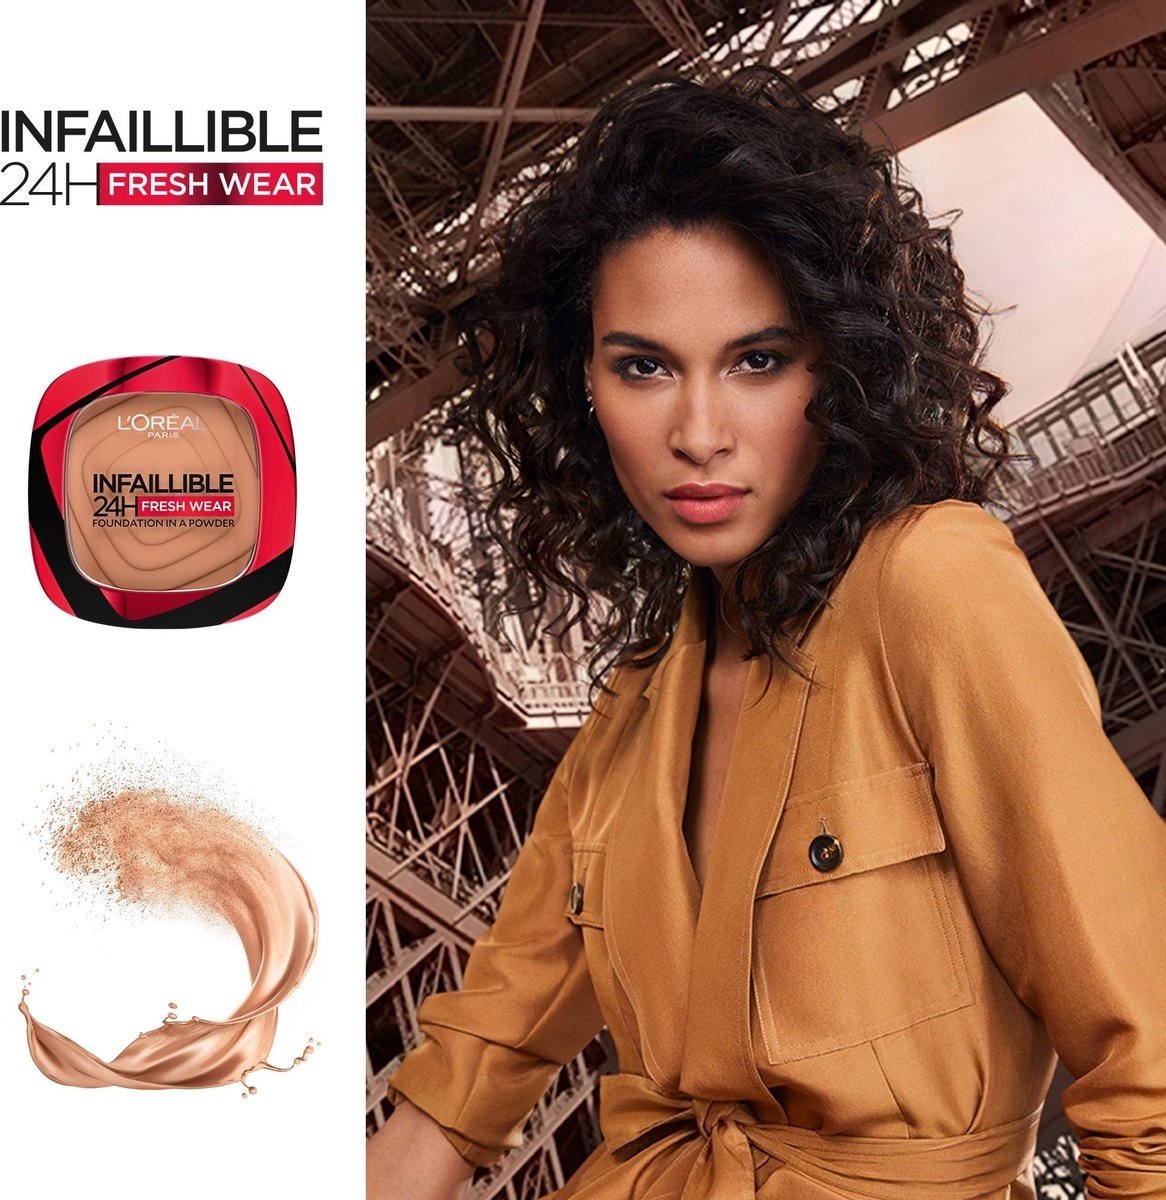 L'Oréal - Infaillible 24h Fresh Wear Powder Foundation - 140 Golden Beige